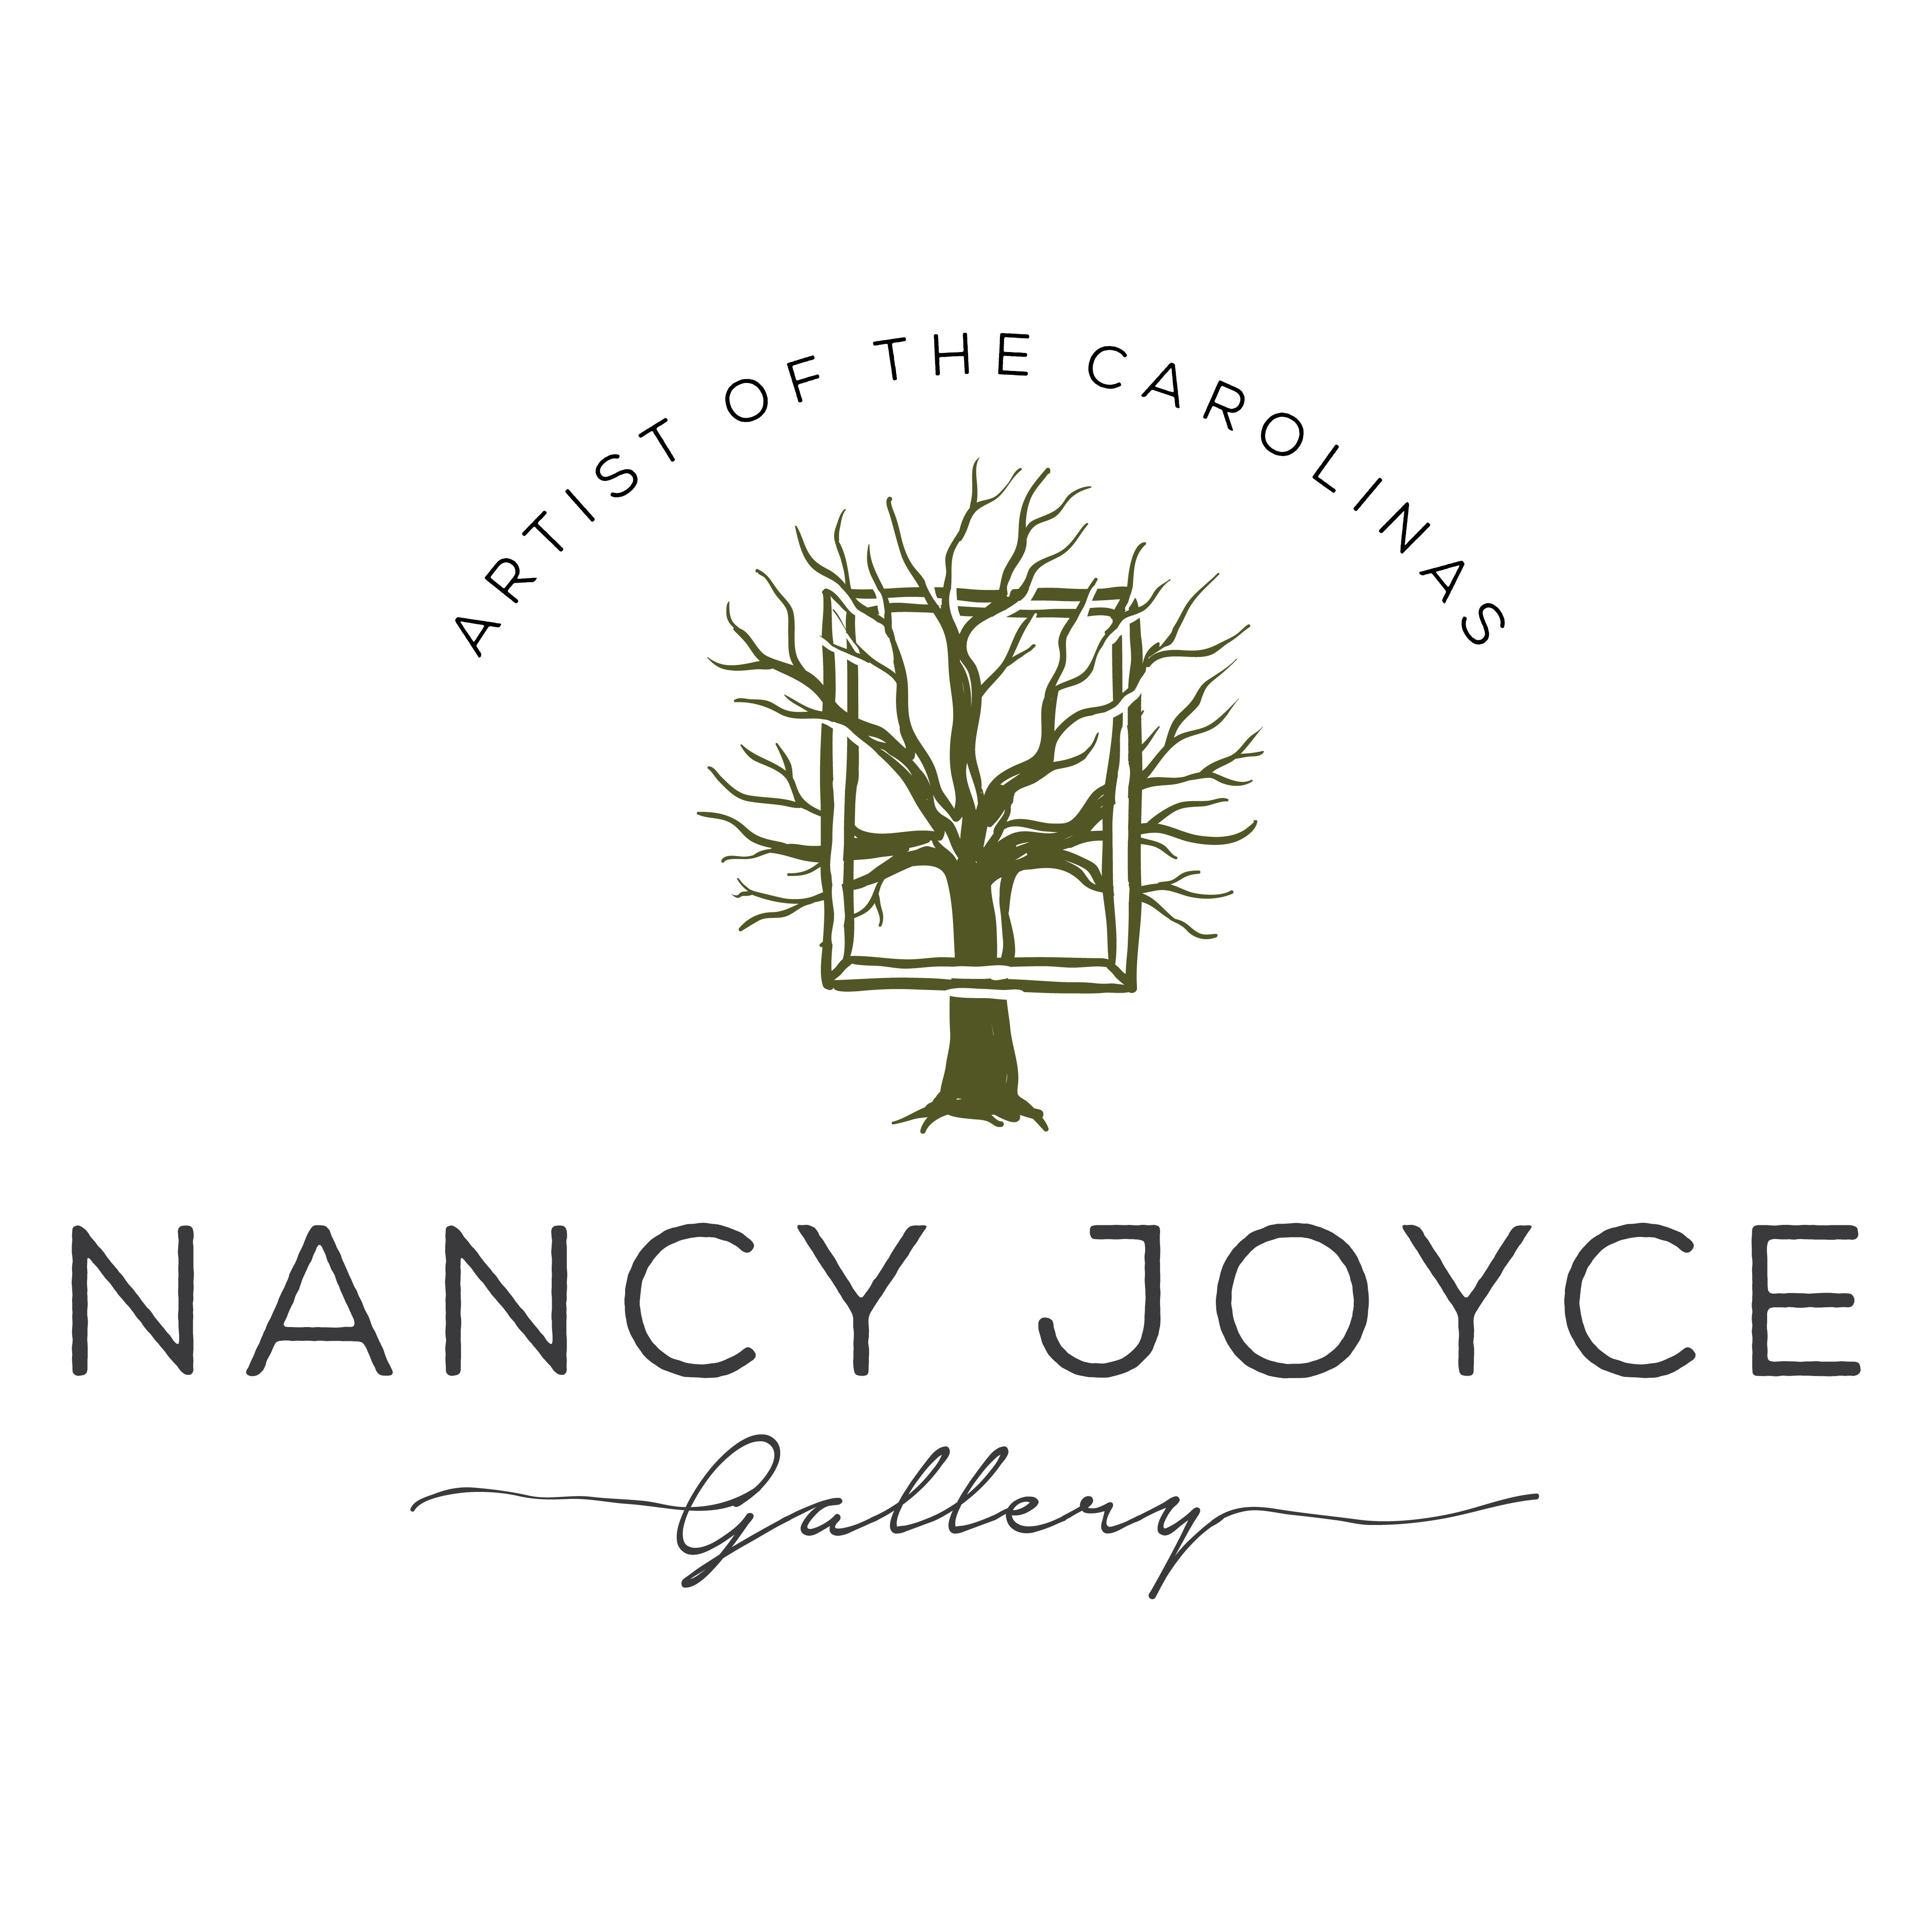 Nancy Joyce Gallery